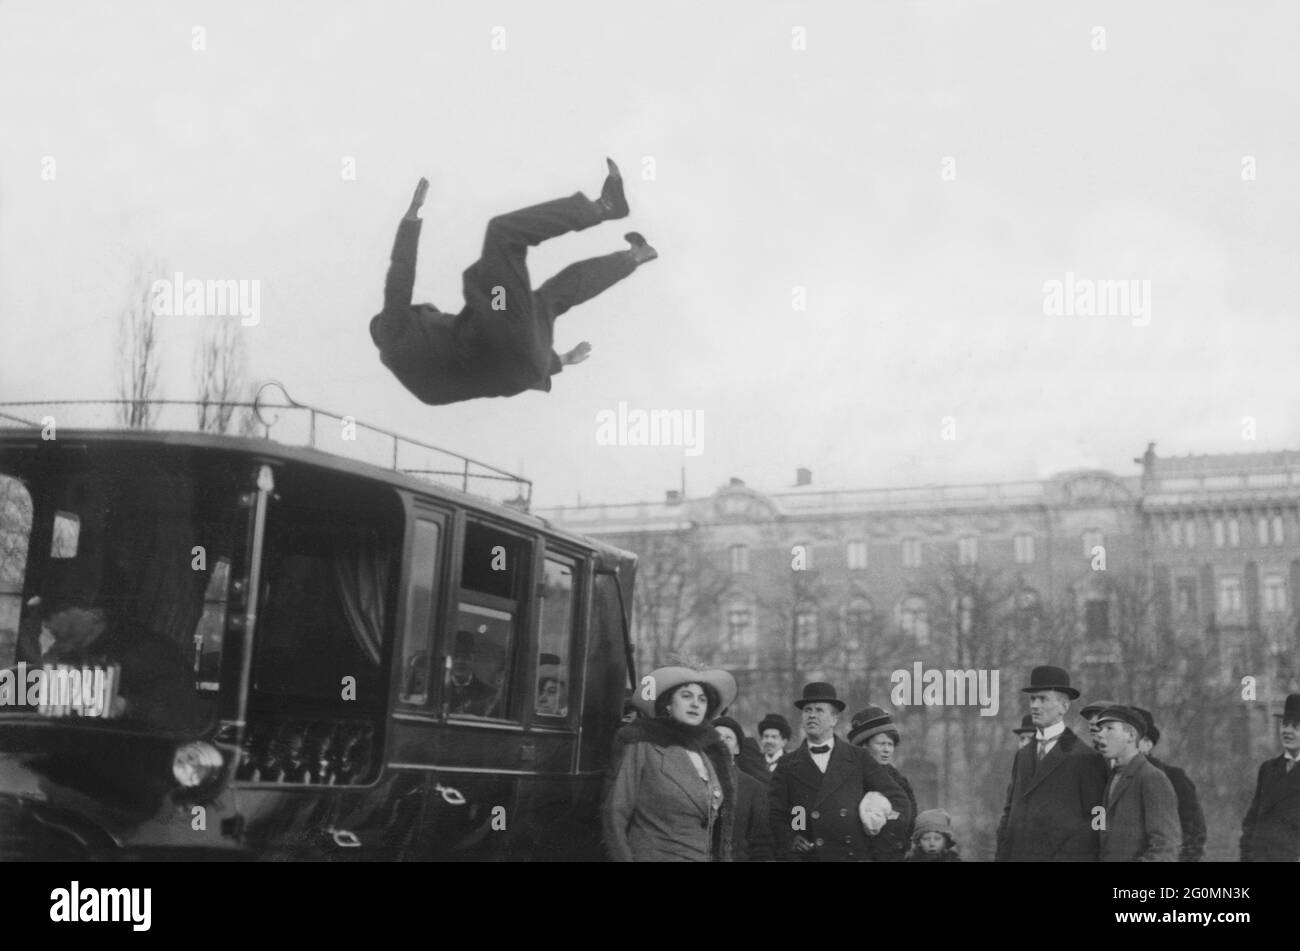 Das seltsame Ereignis von 1913. Der dänische akrobatin Qerhardi Mohr macht im februar 1913 einen Sprung über ein Taxi in einer Straße in stockholm. Abgebildet, wenn man über dem Auto in der Luft ist und die Menschen erstaunt auf sie schauen. Stockfoto